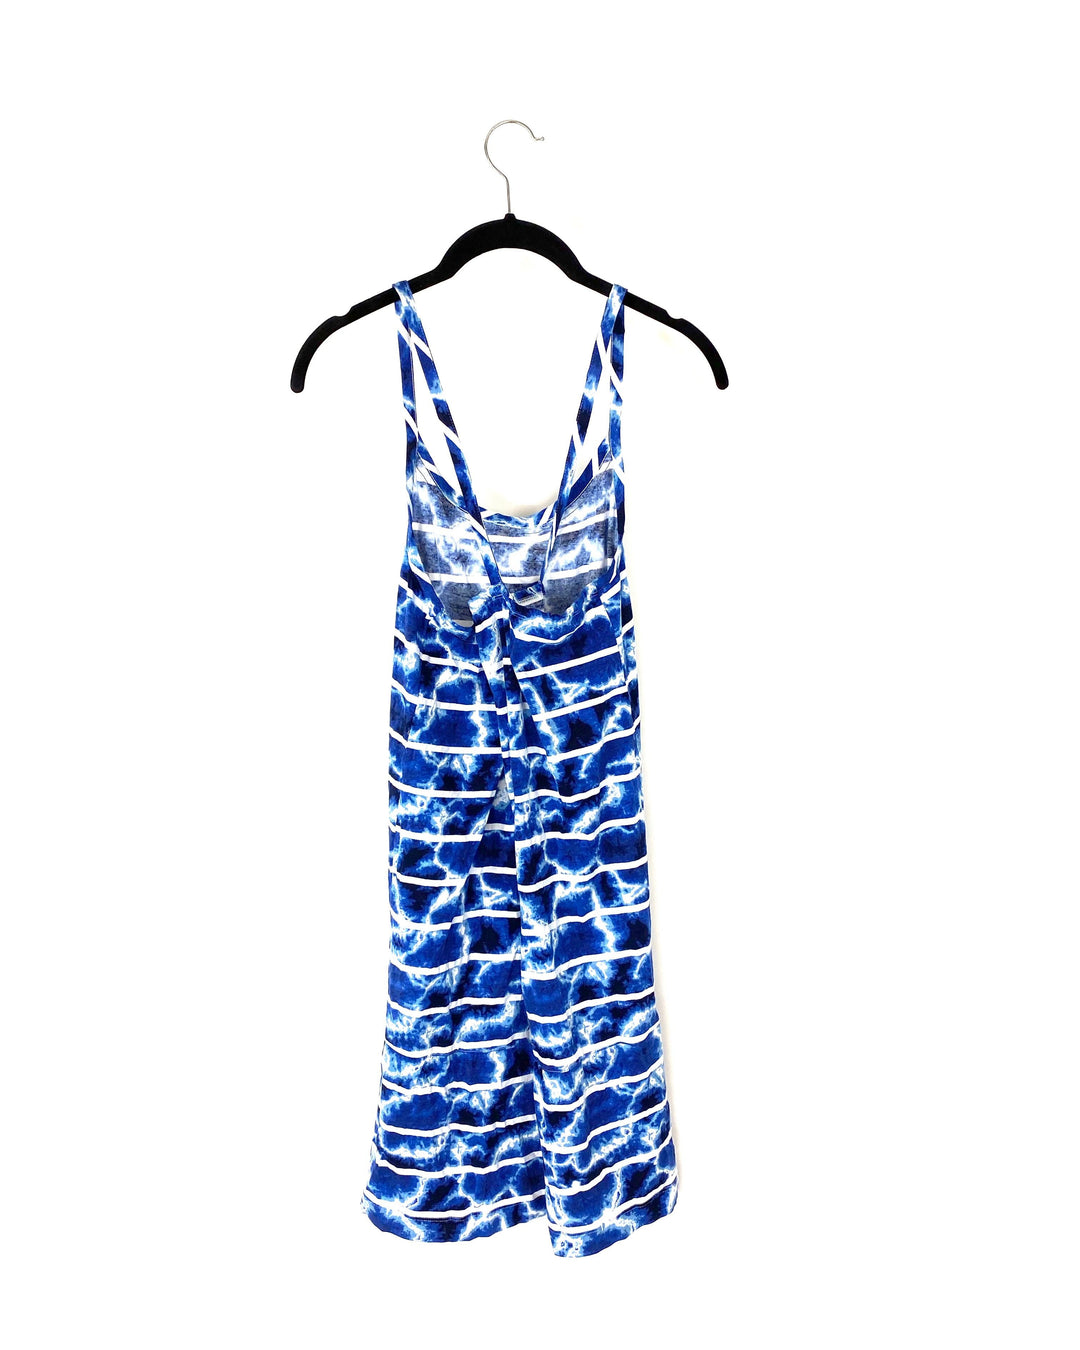 Blue Tie Dye Lounge Dress - Small